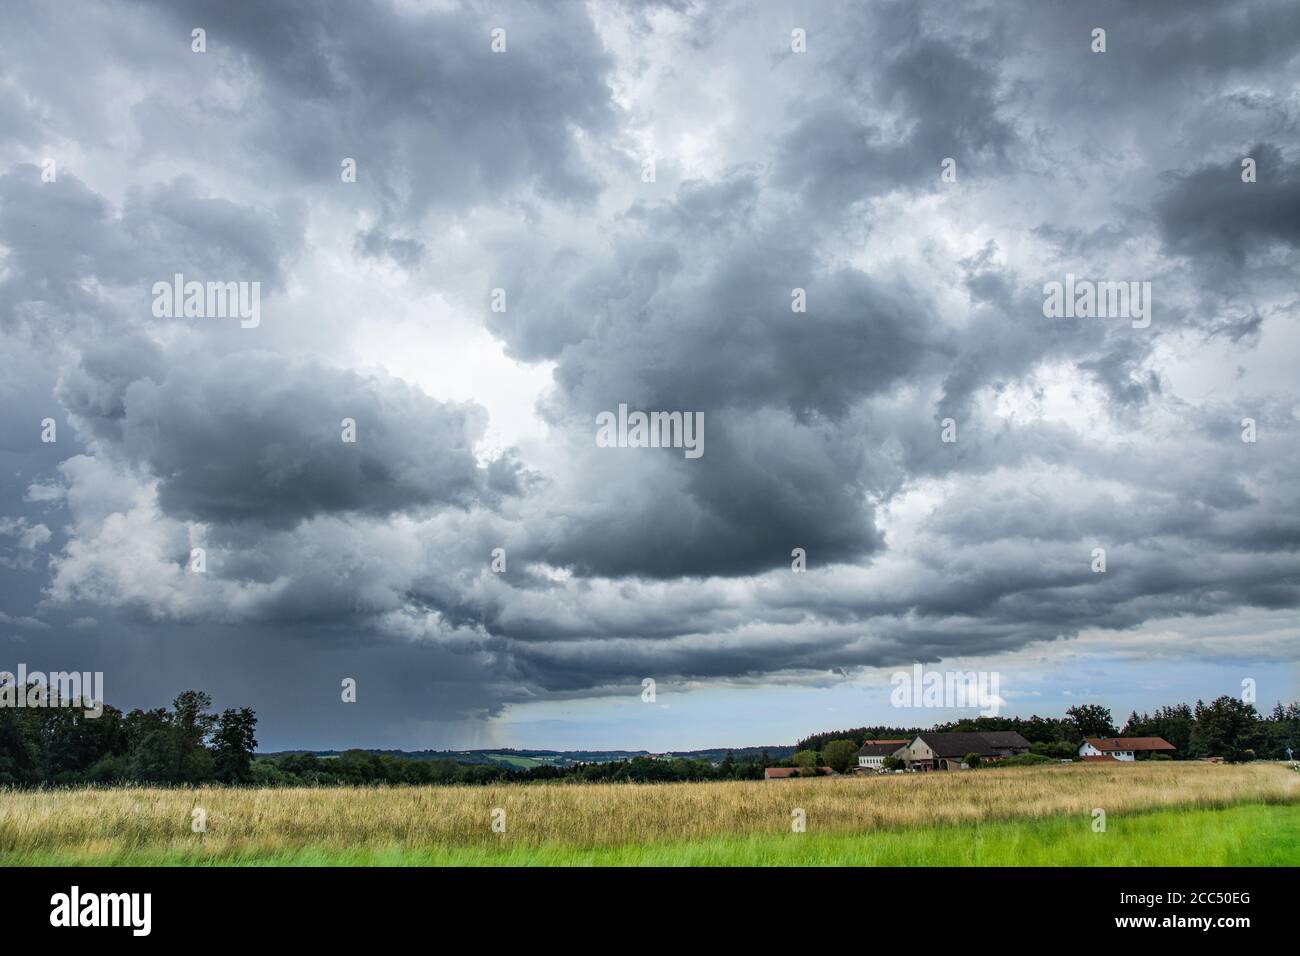 thunderstorm with heavy rain, Germany, Bavaria, Isental Stock Photo